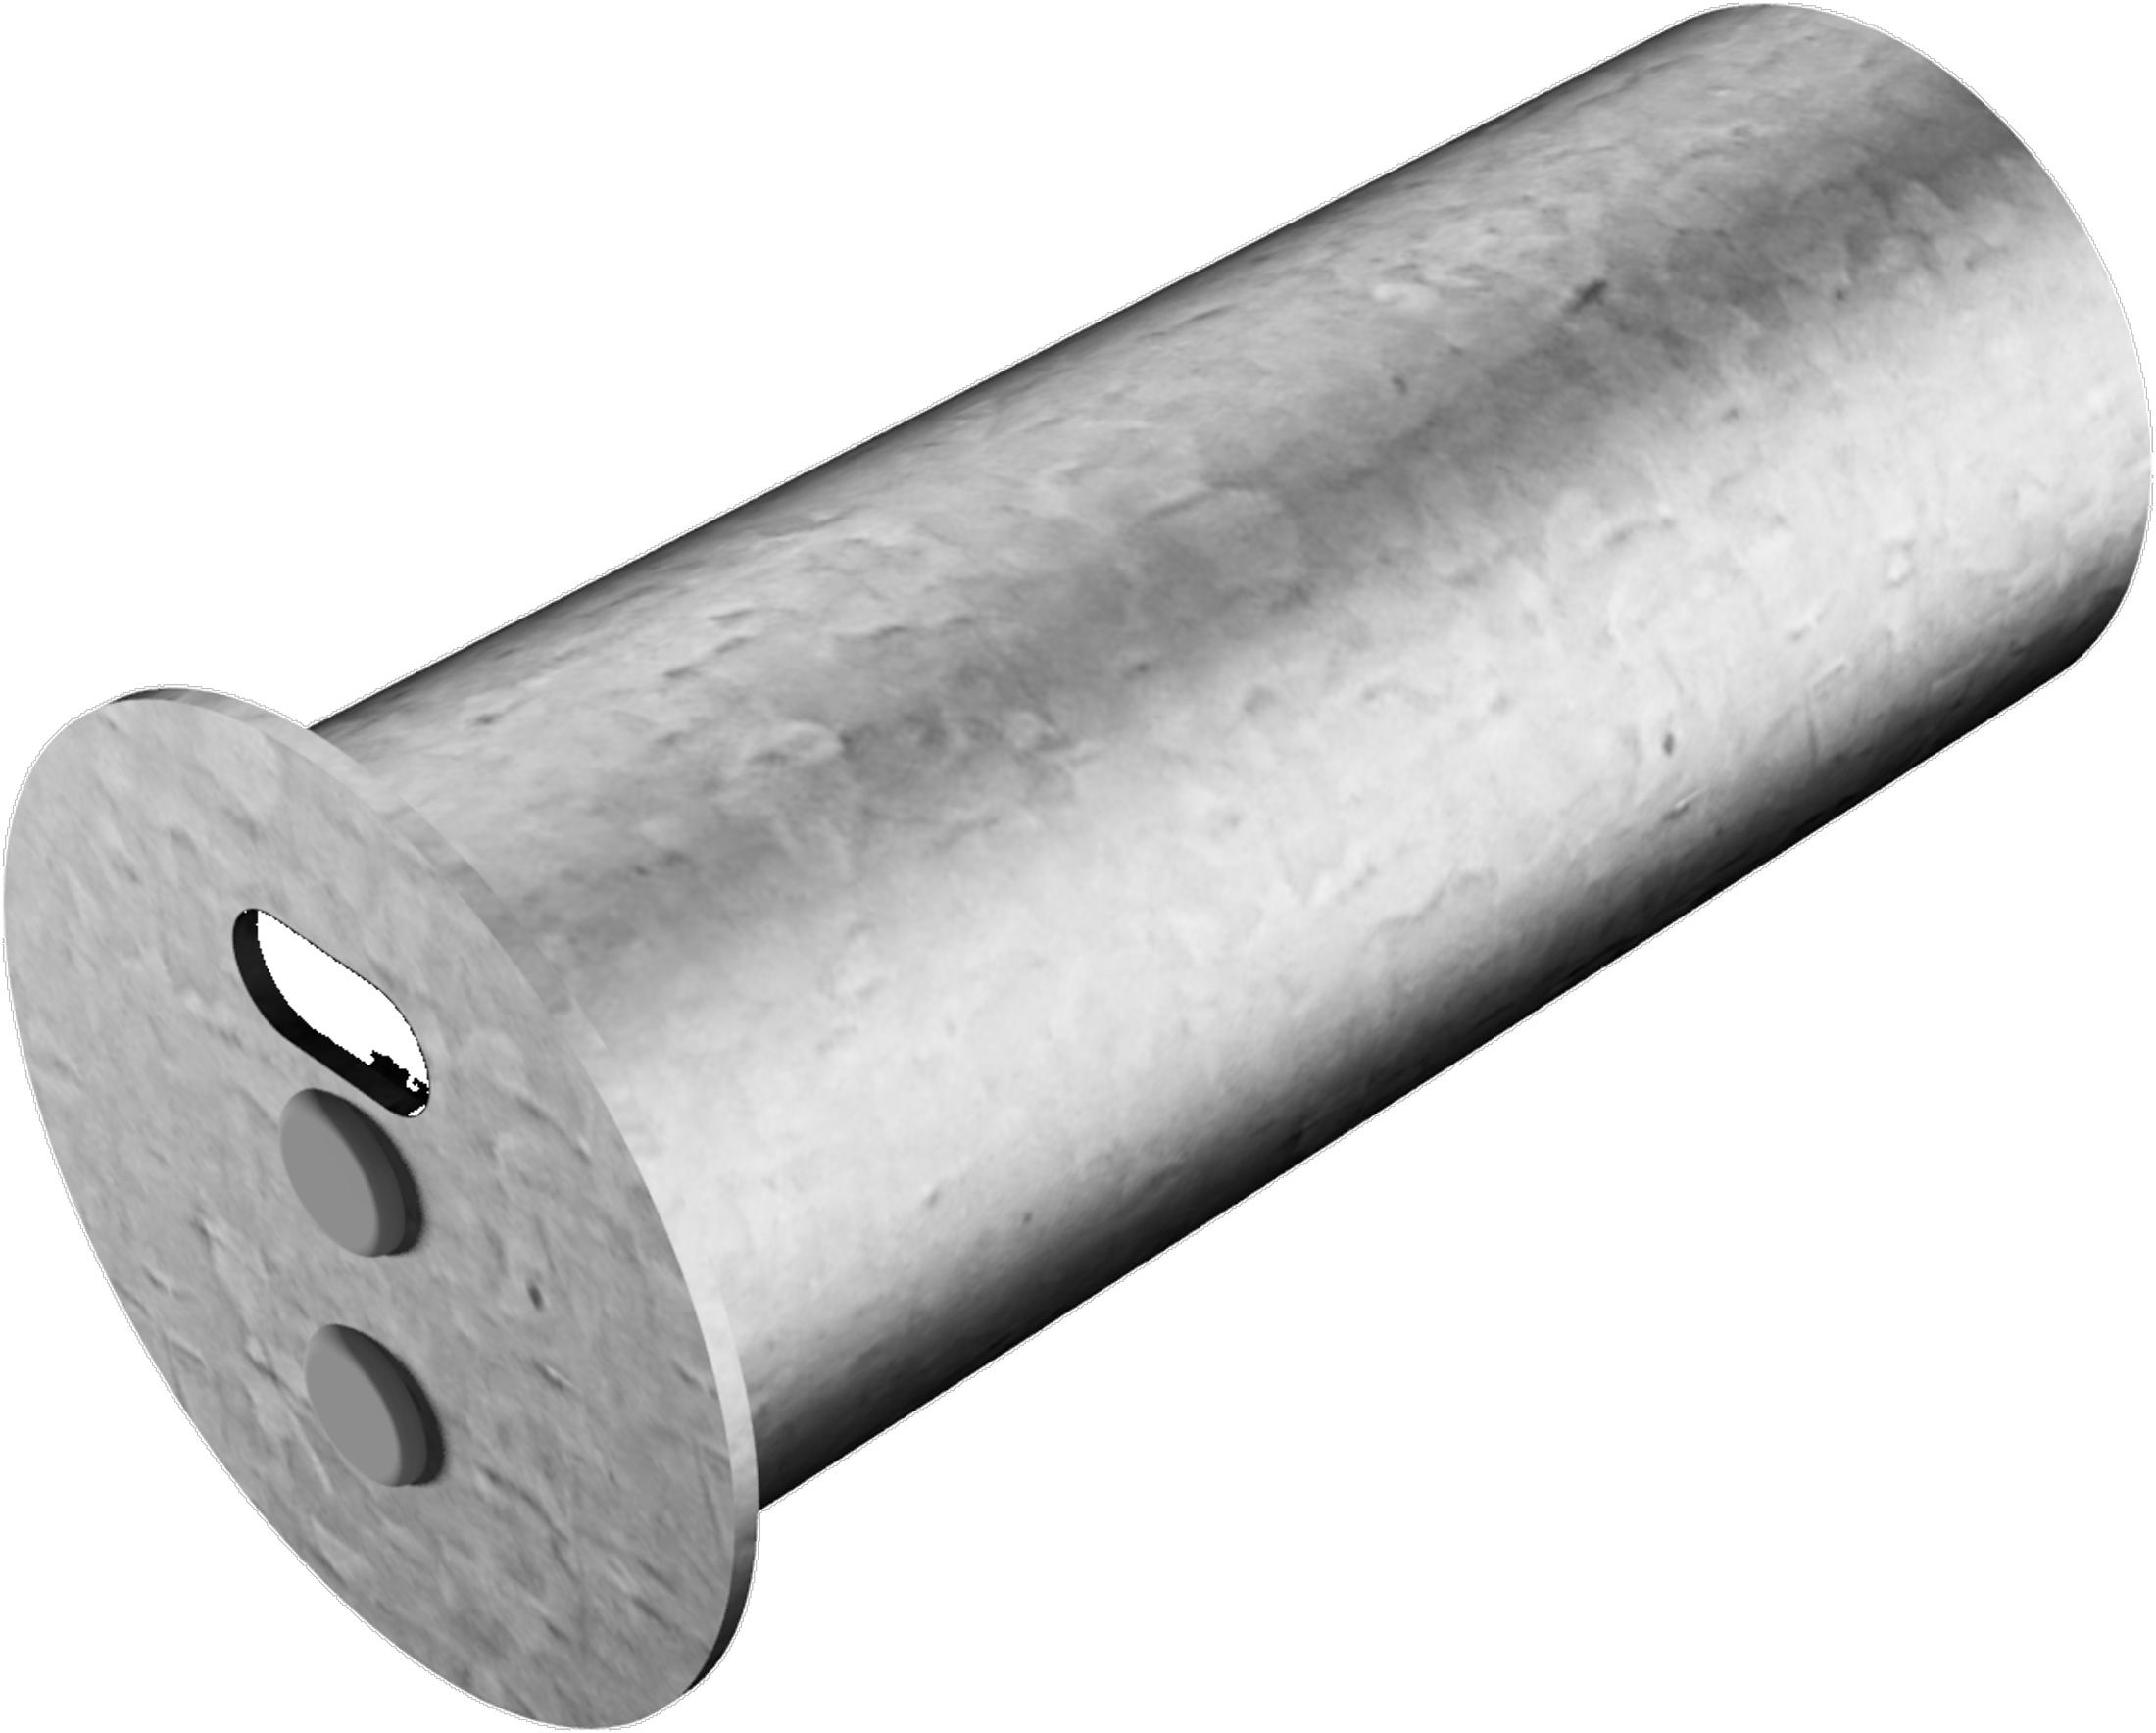 Schake Abdeckkappe mit Verschluss für Ø 60 mm Pfosten